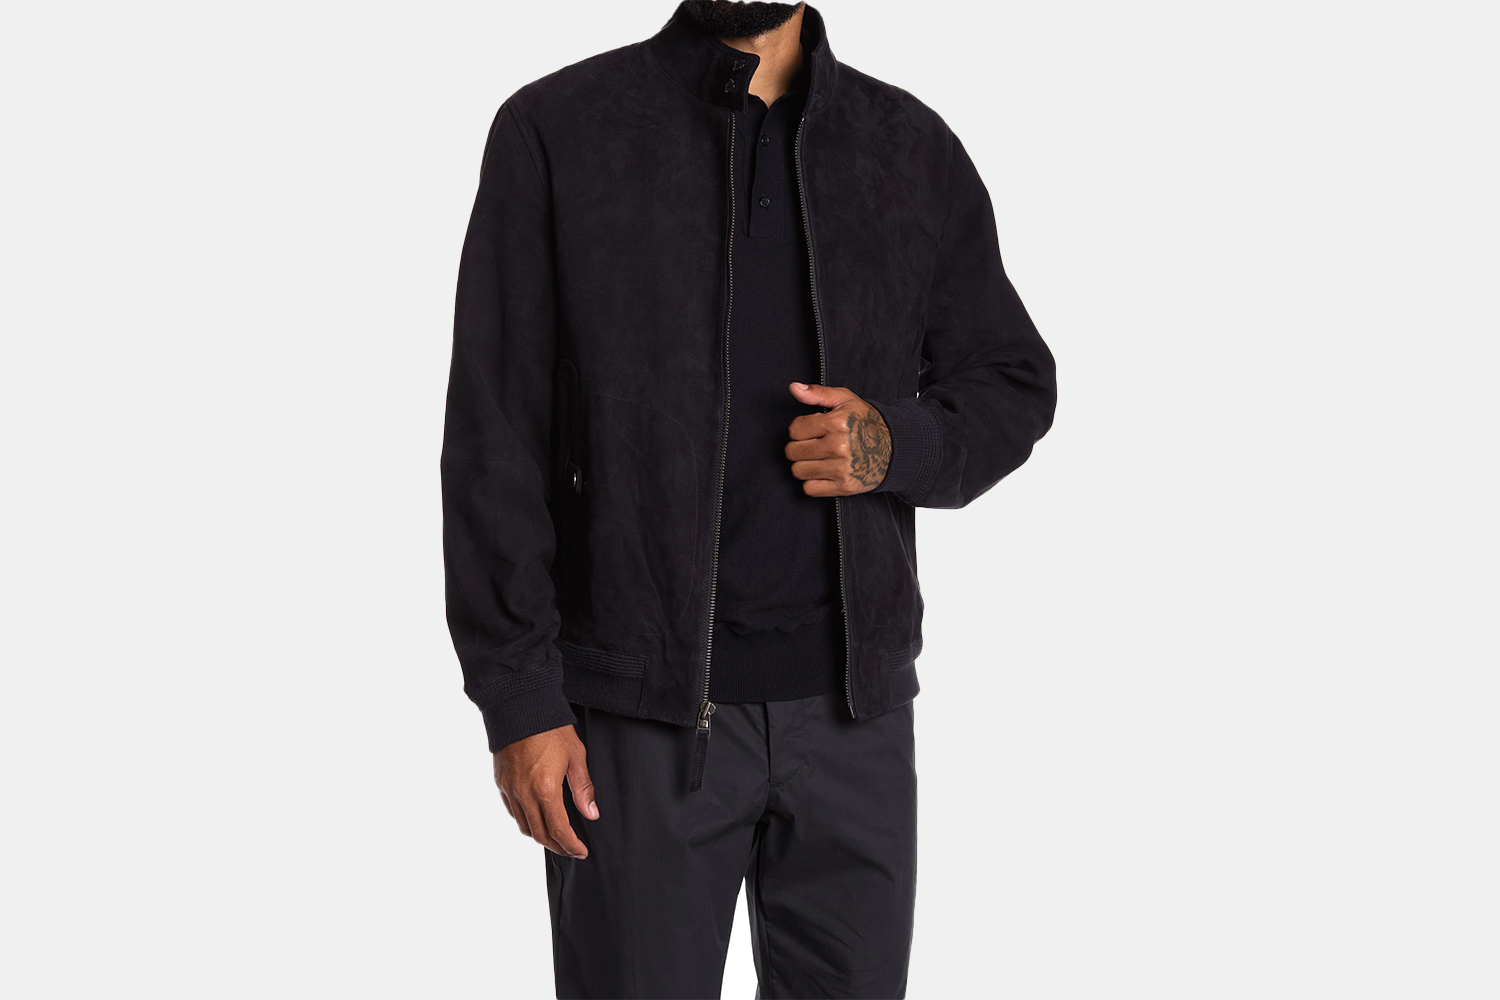 a dark suede jacket